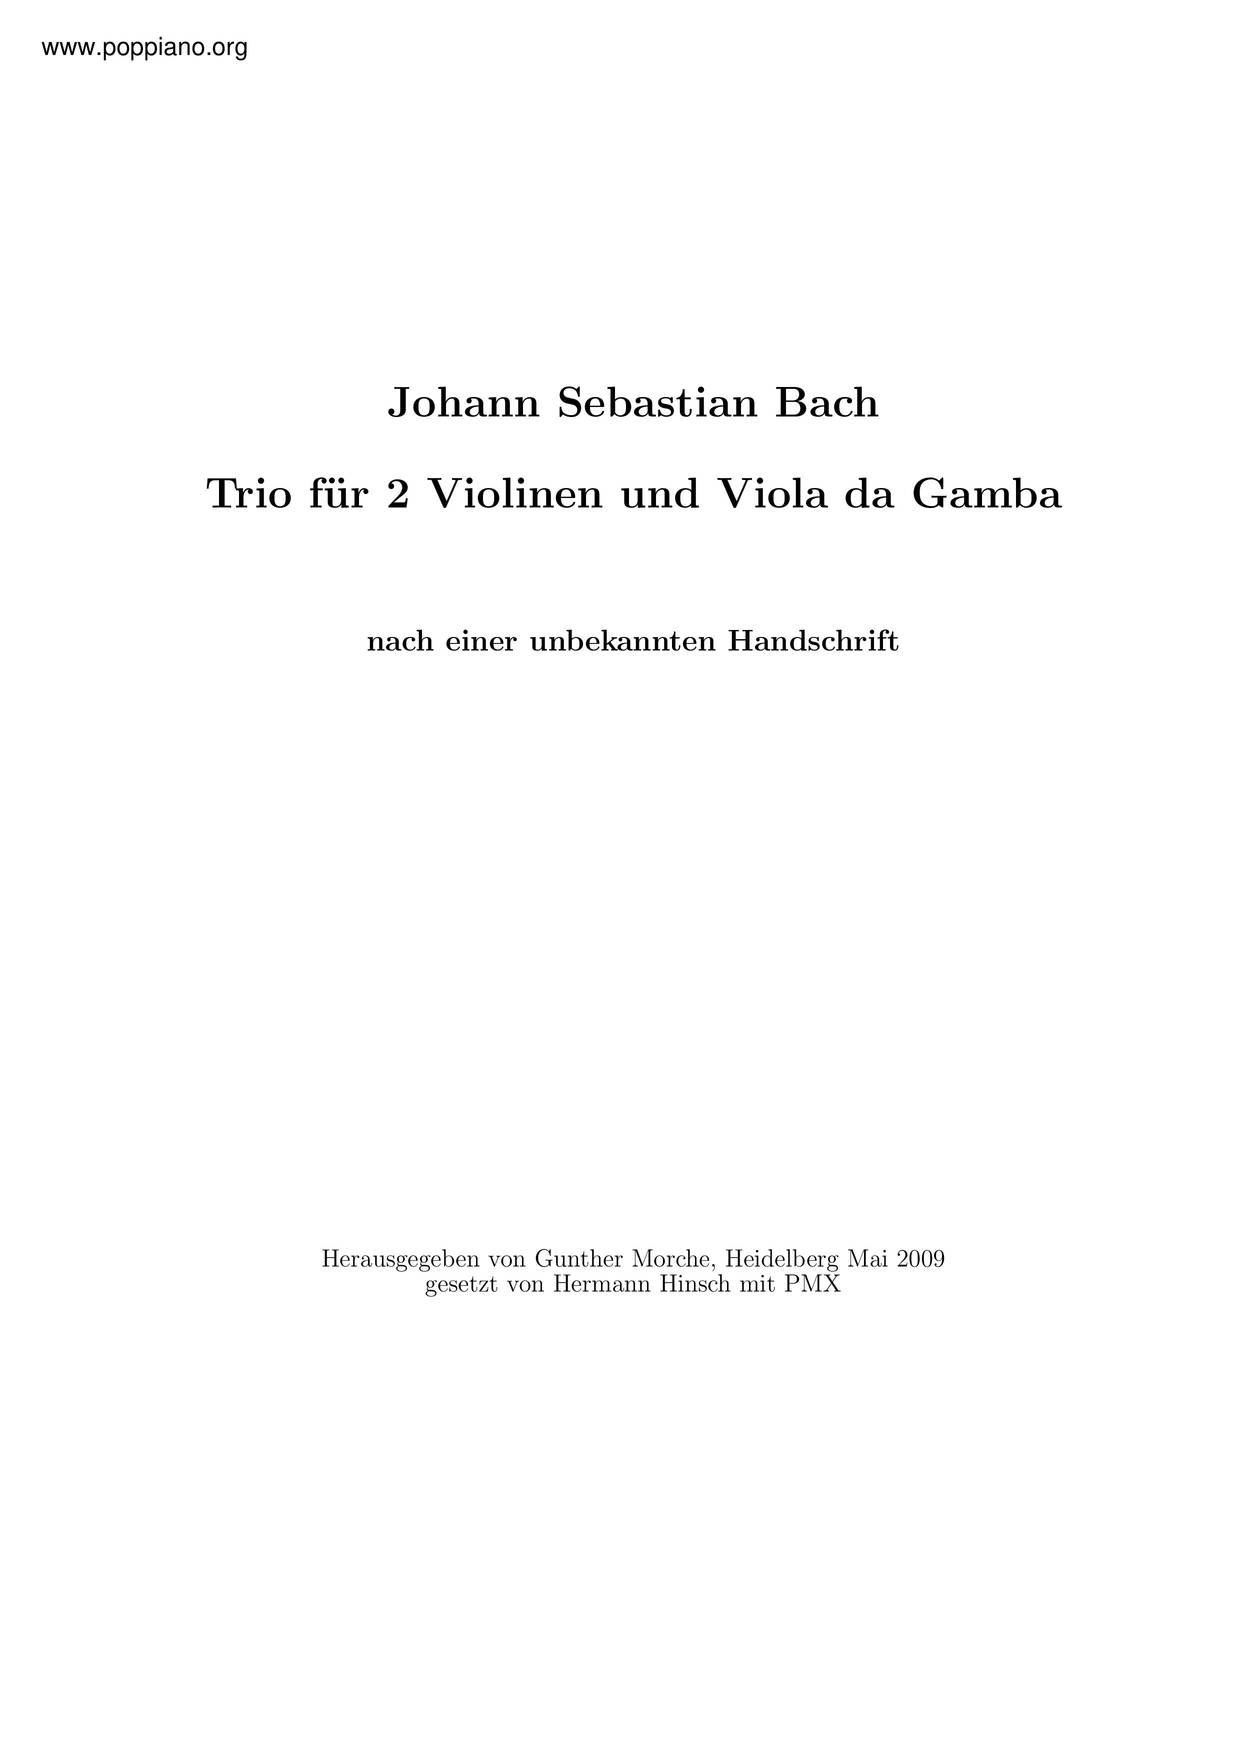 Trio Sonata In C Minor Score